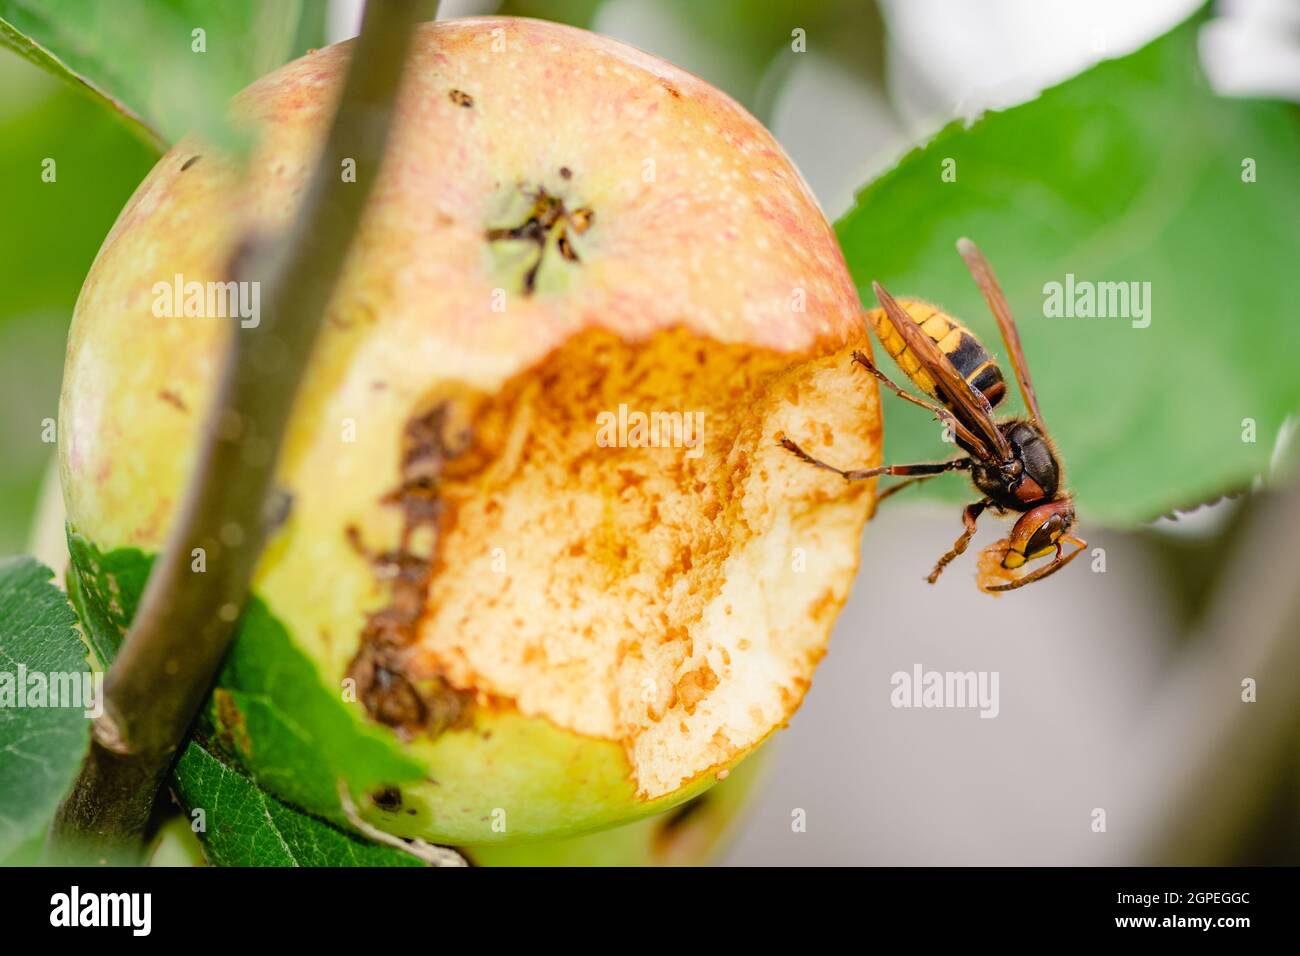 Riesige europäische Hornissenwespe oder Vespa crabro, die einen Apfel aus der Nähe von einem Baum frisst Stockfoto